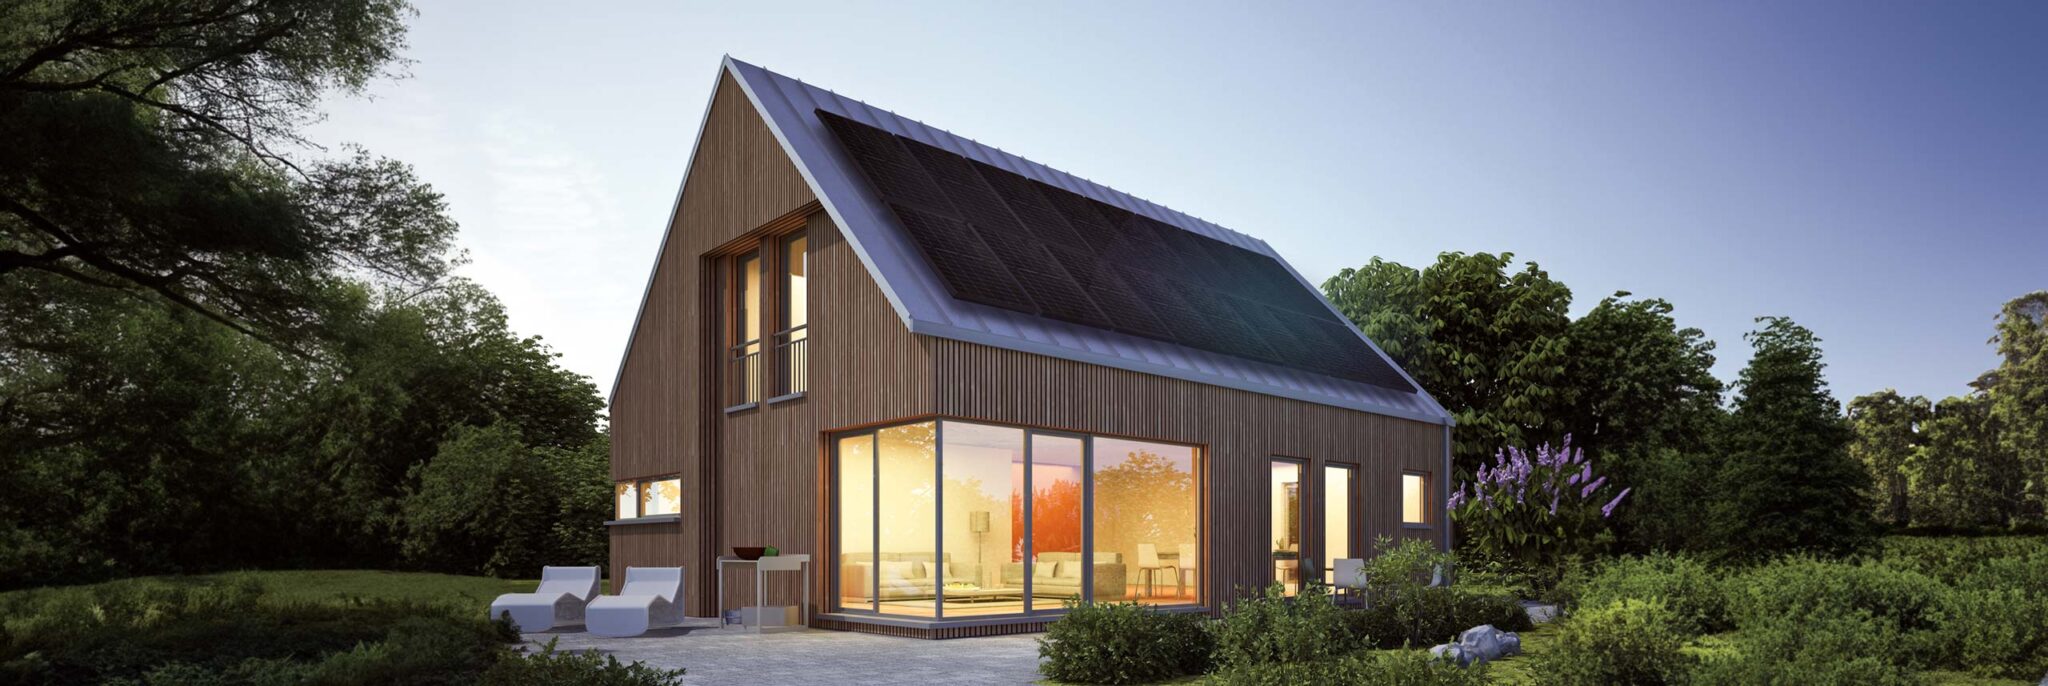 Modernes Einfamilienhaus mit Solaranlage im Grünen